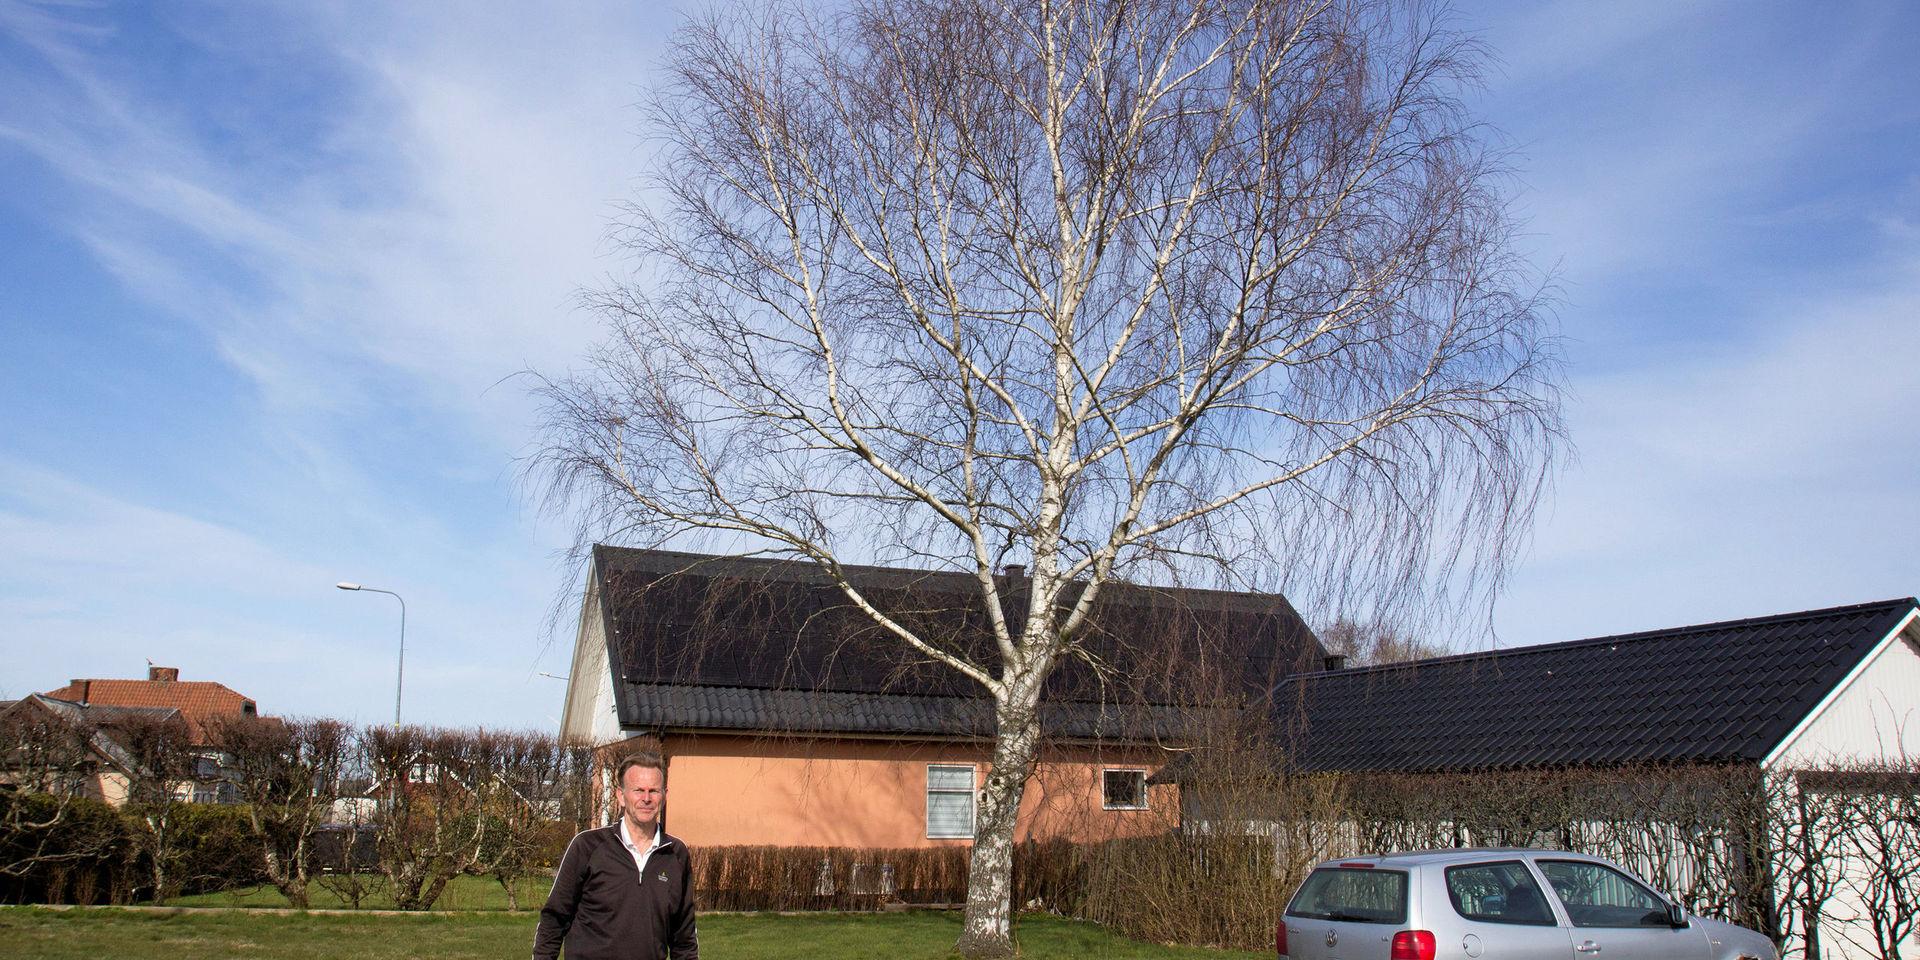 Laholms kommun tycker att det är bra att rätten ska reda ut frågan om det kommunala trädet som skuggar solceller på en privat villa. Domen blir en vägledning i framtiden, hoppas stadsträdgårdsmästaren.